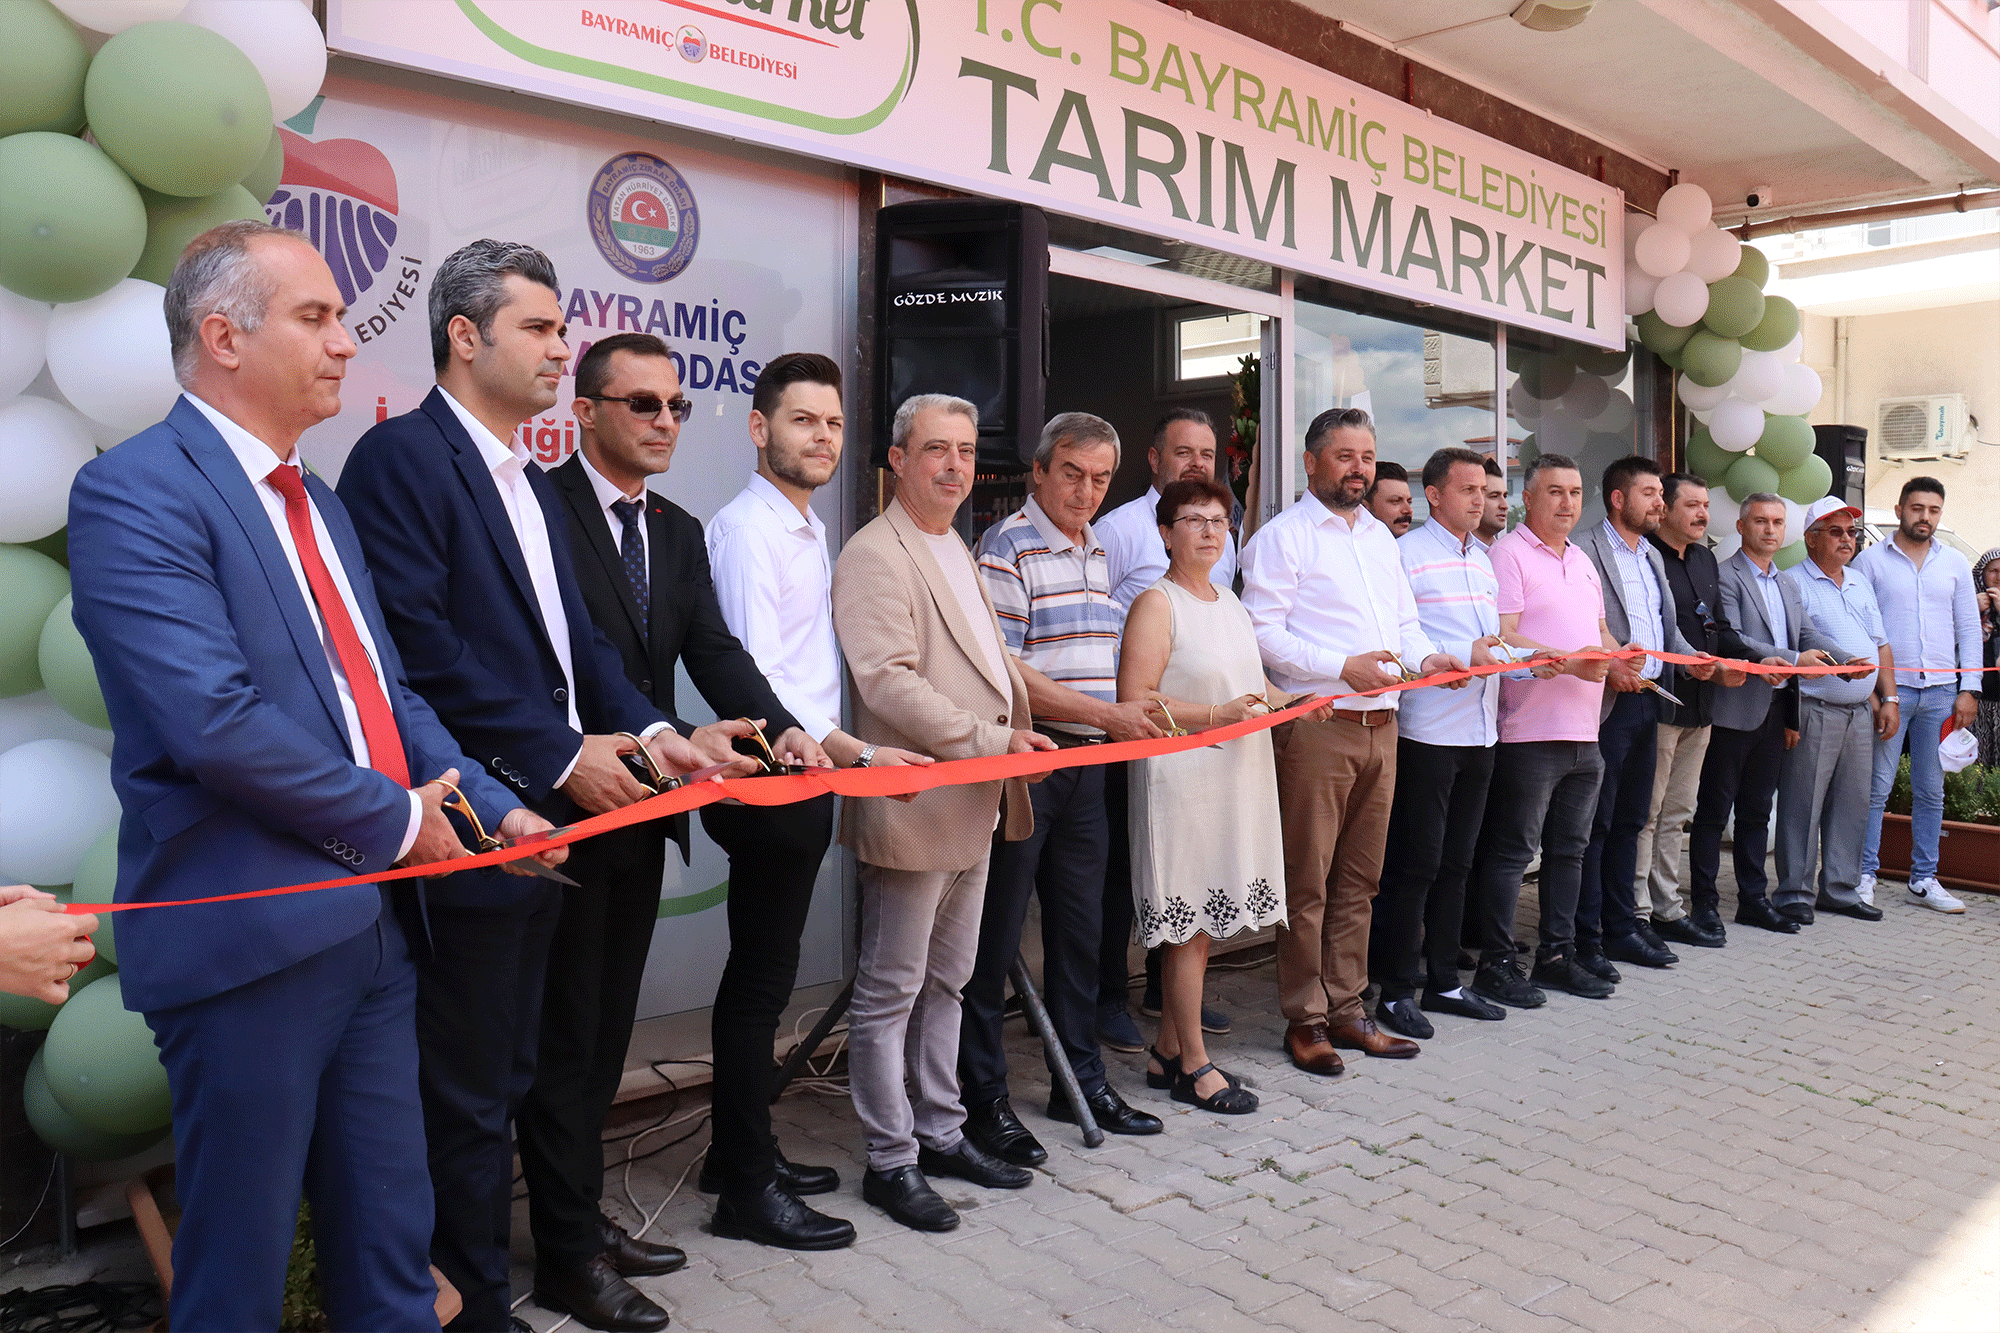 Tarım Market açıldı